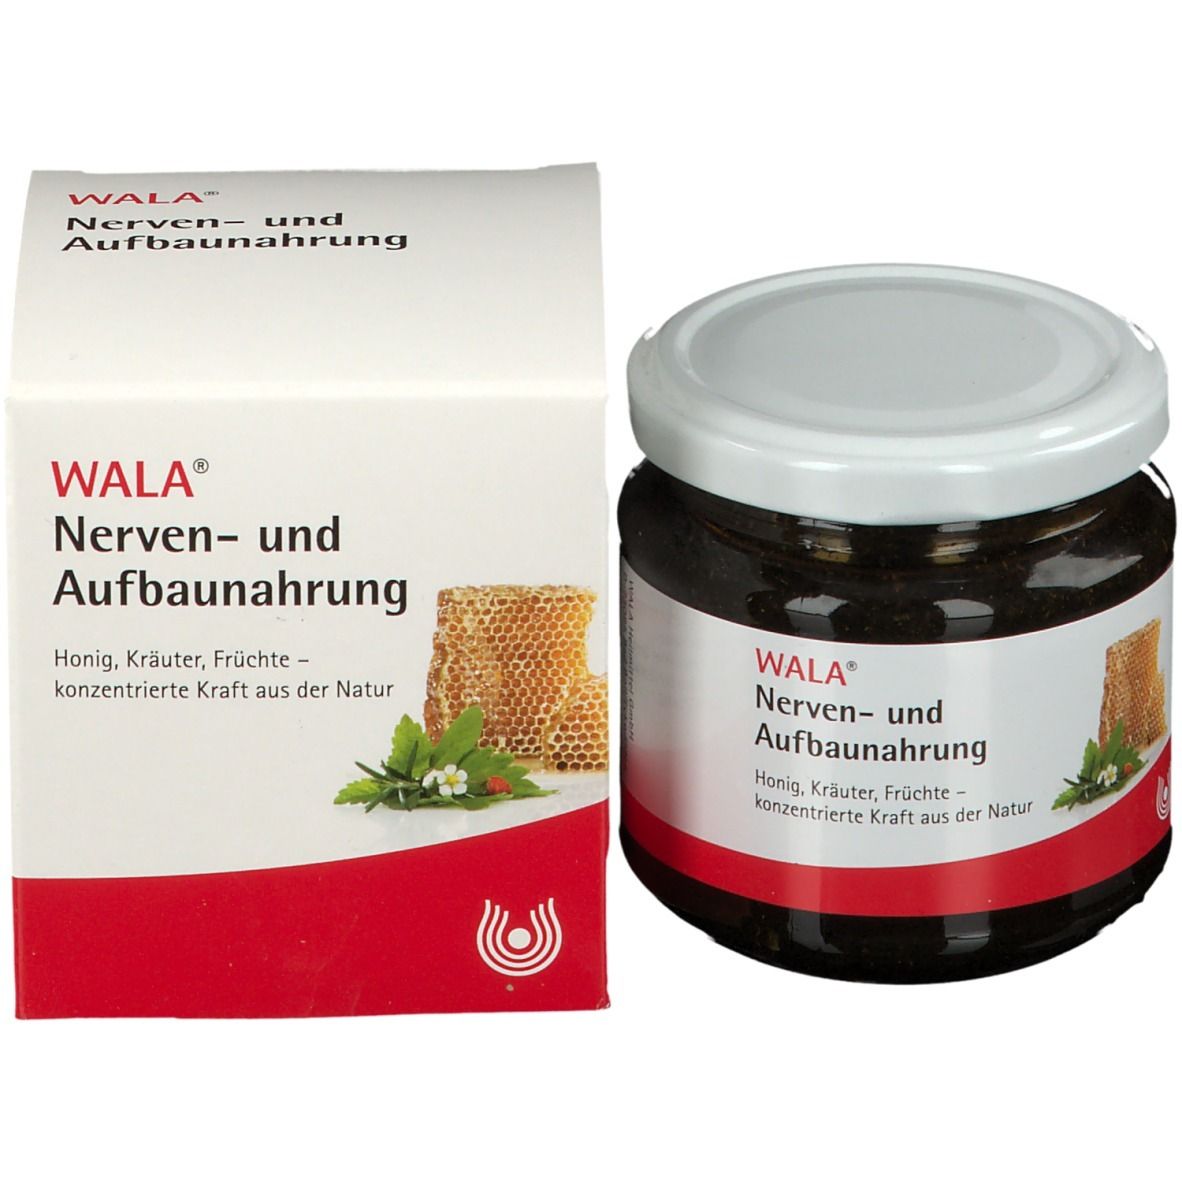 WALA® Nerven- und Aufbaunahrung